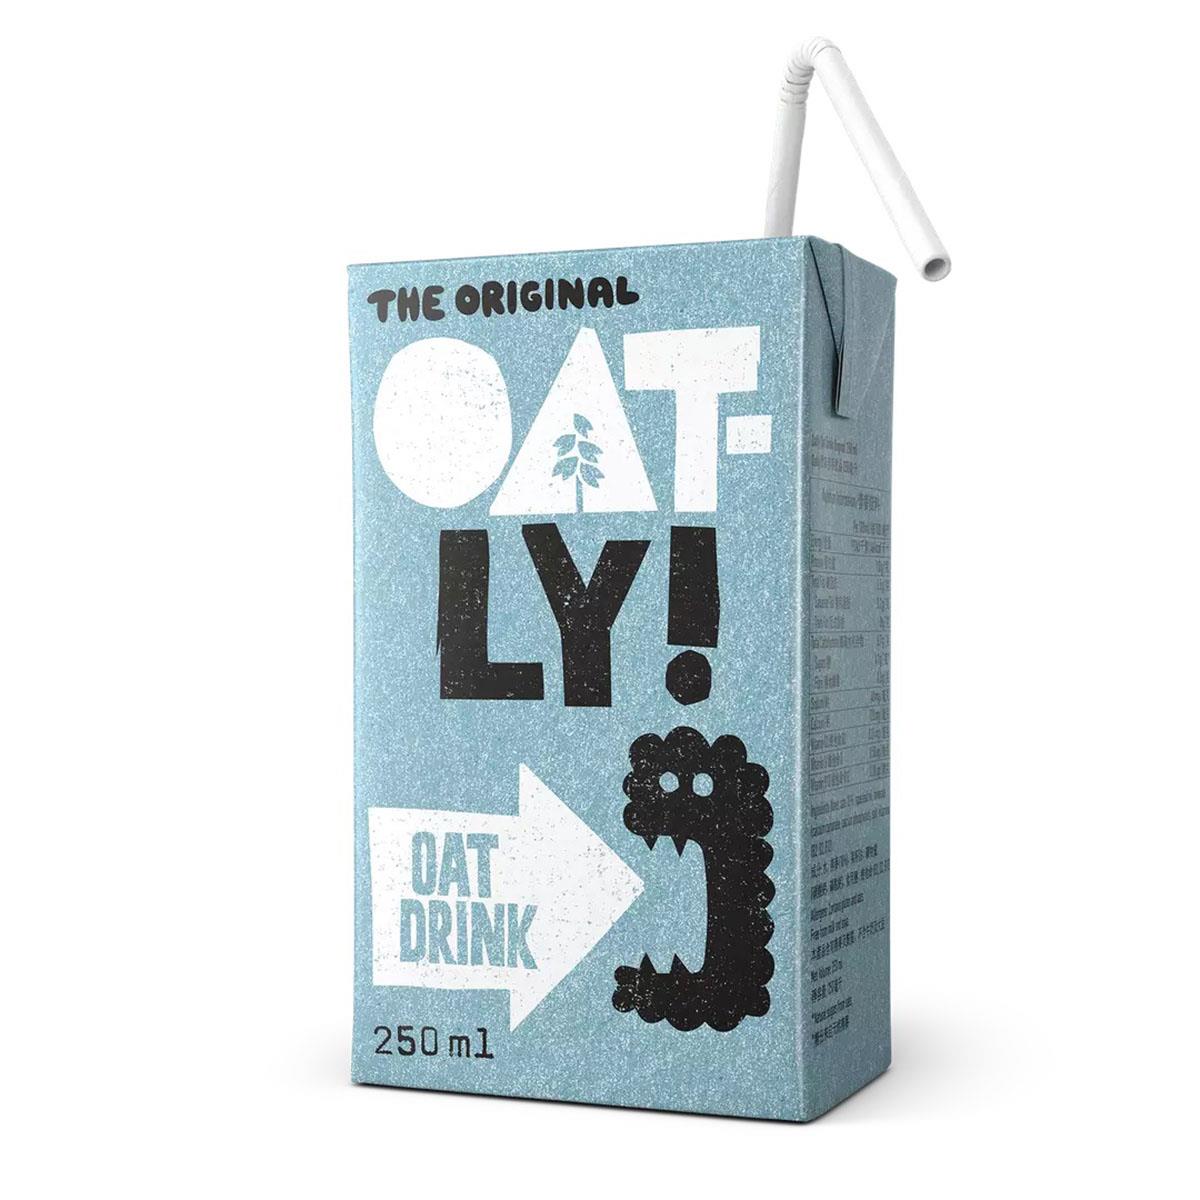 Oatly - Oat Drink Enriched (250ml) - The Vegan Kind